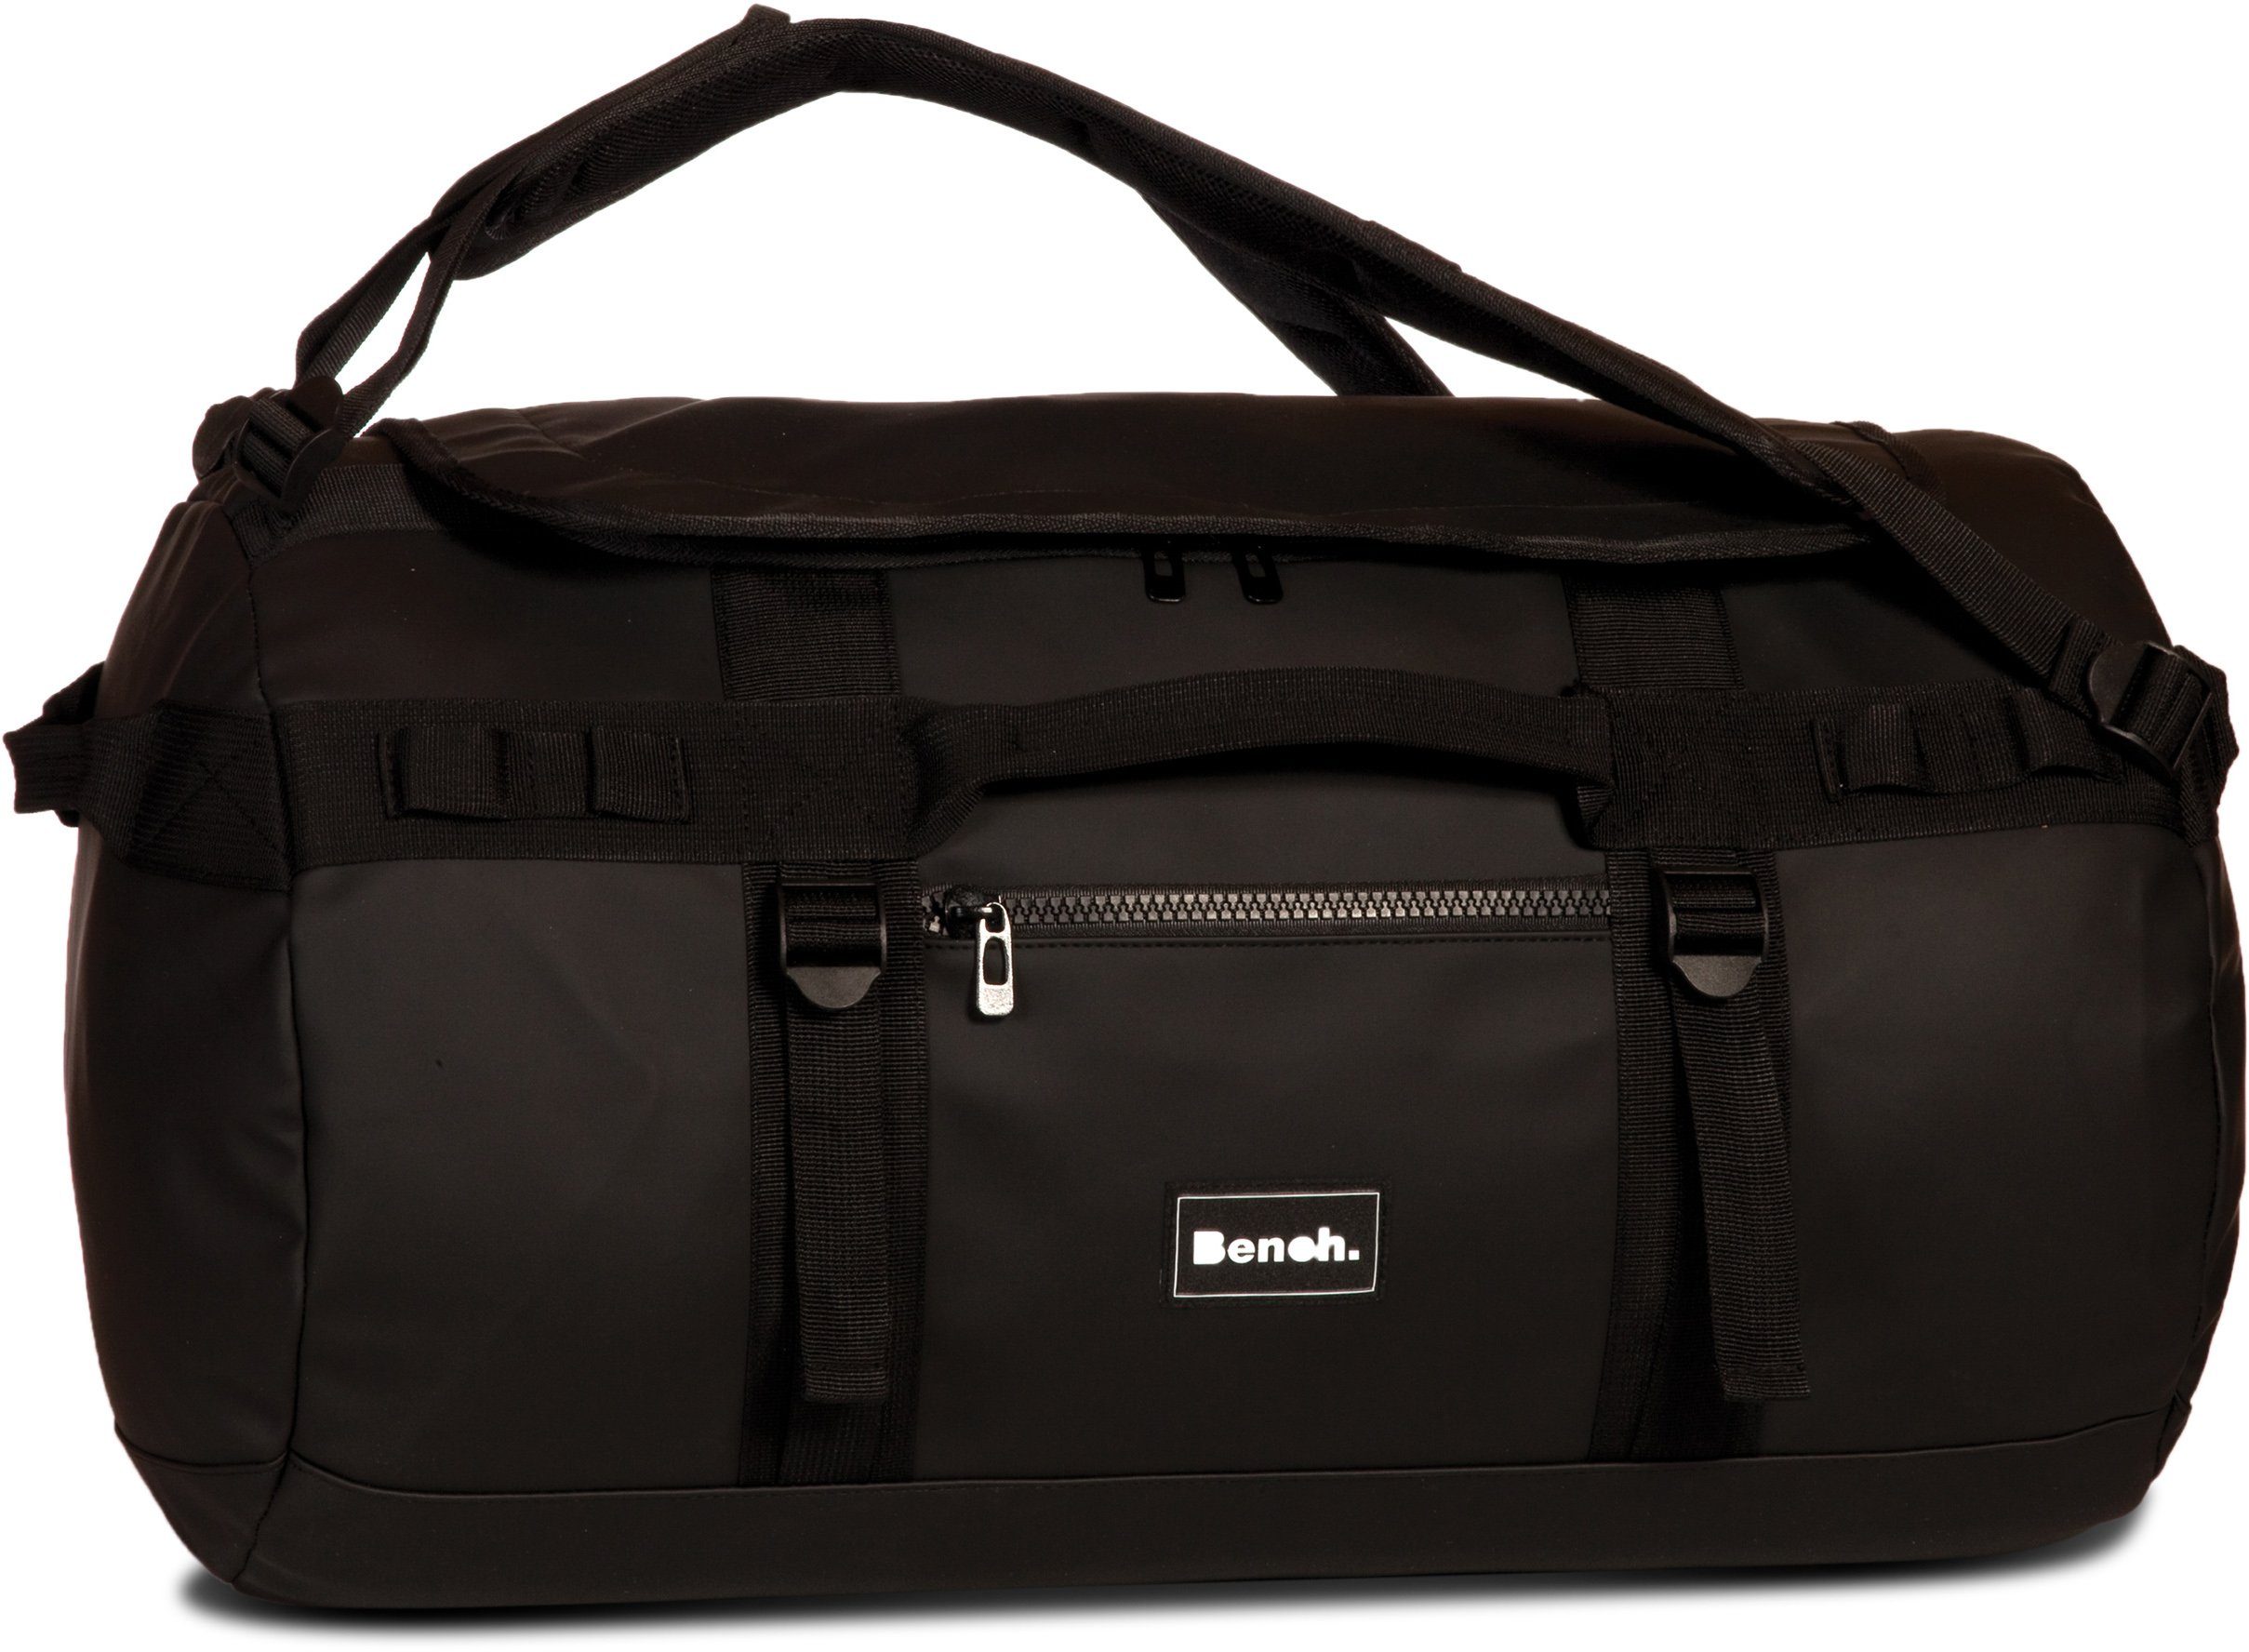 Bench. Reisetasche Hydro, schwarz, mit Rucksackfunktion; aus wasserabweisendem Material | Reisetaschen